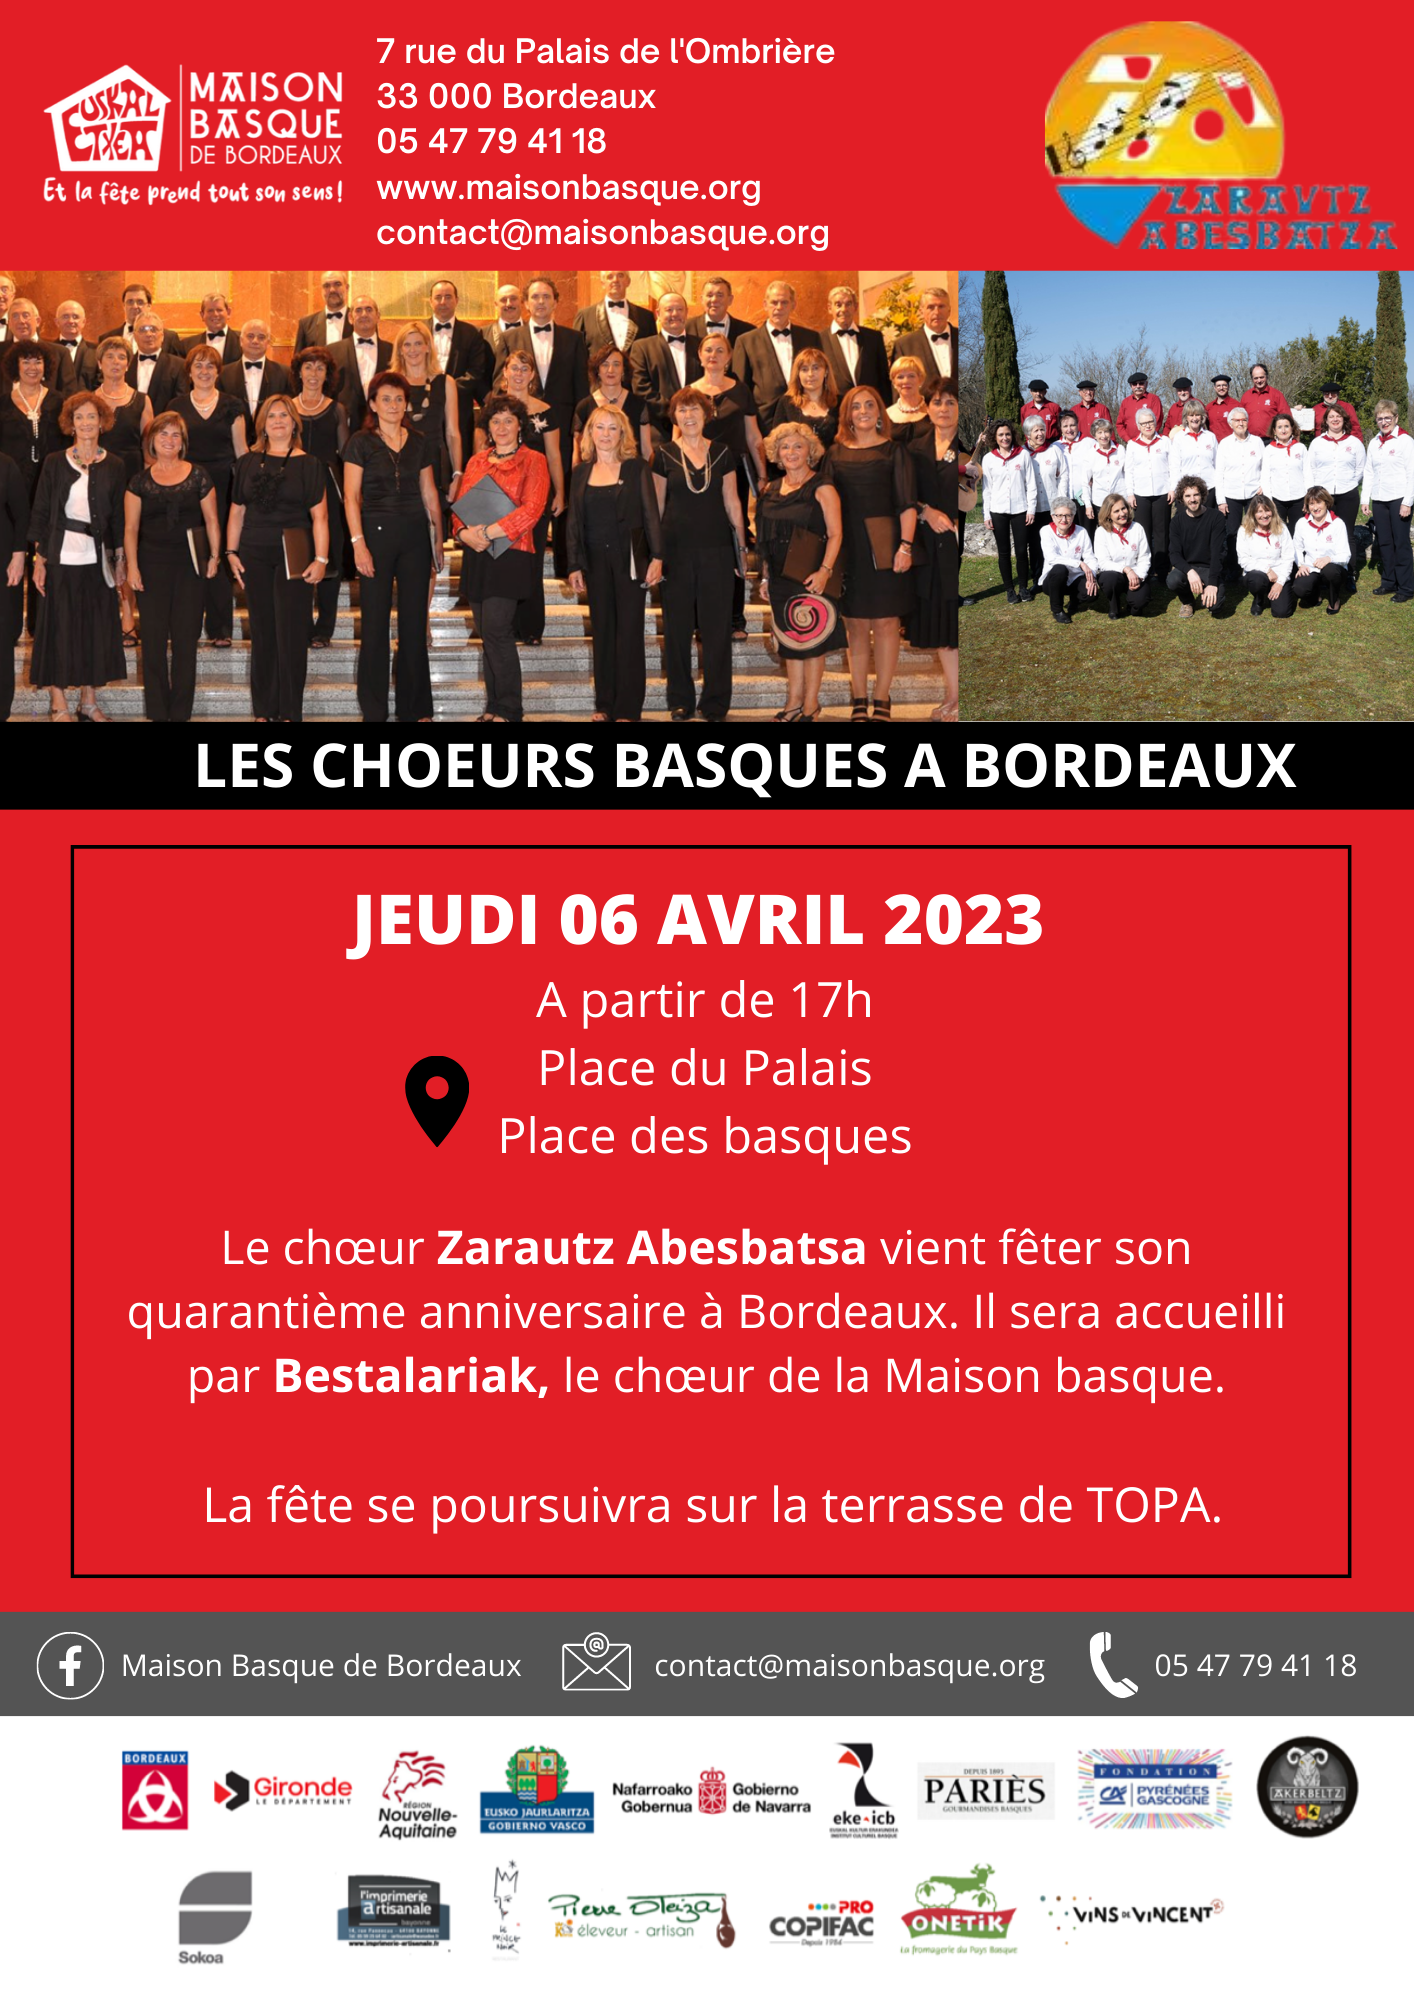 Les chœurs basques à Bordeaux le 06 avril 